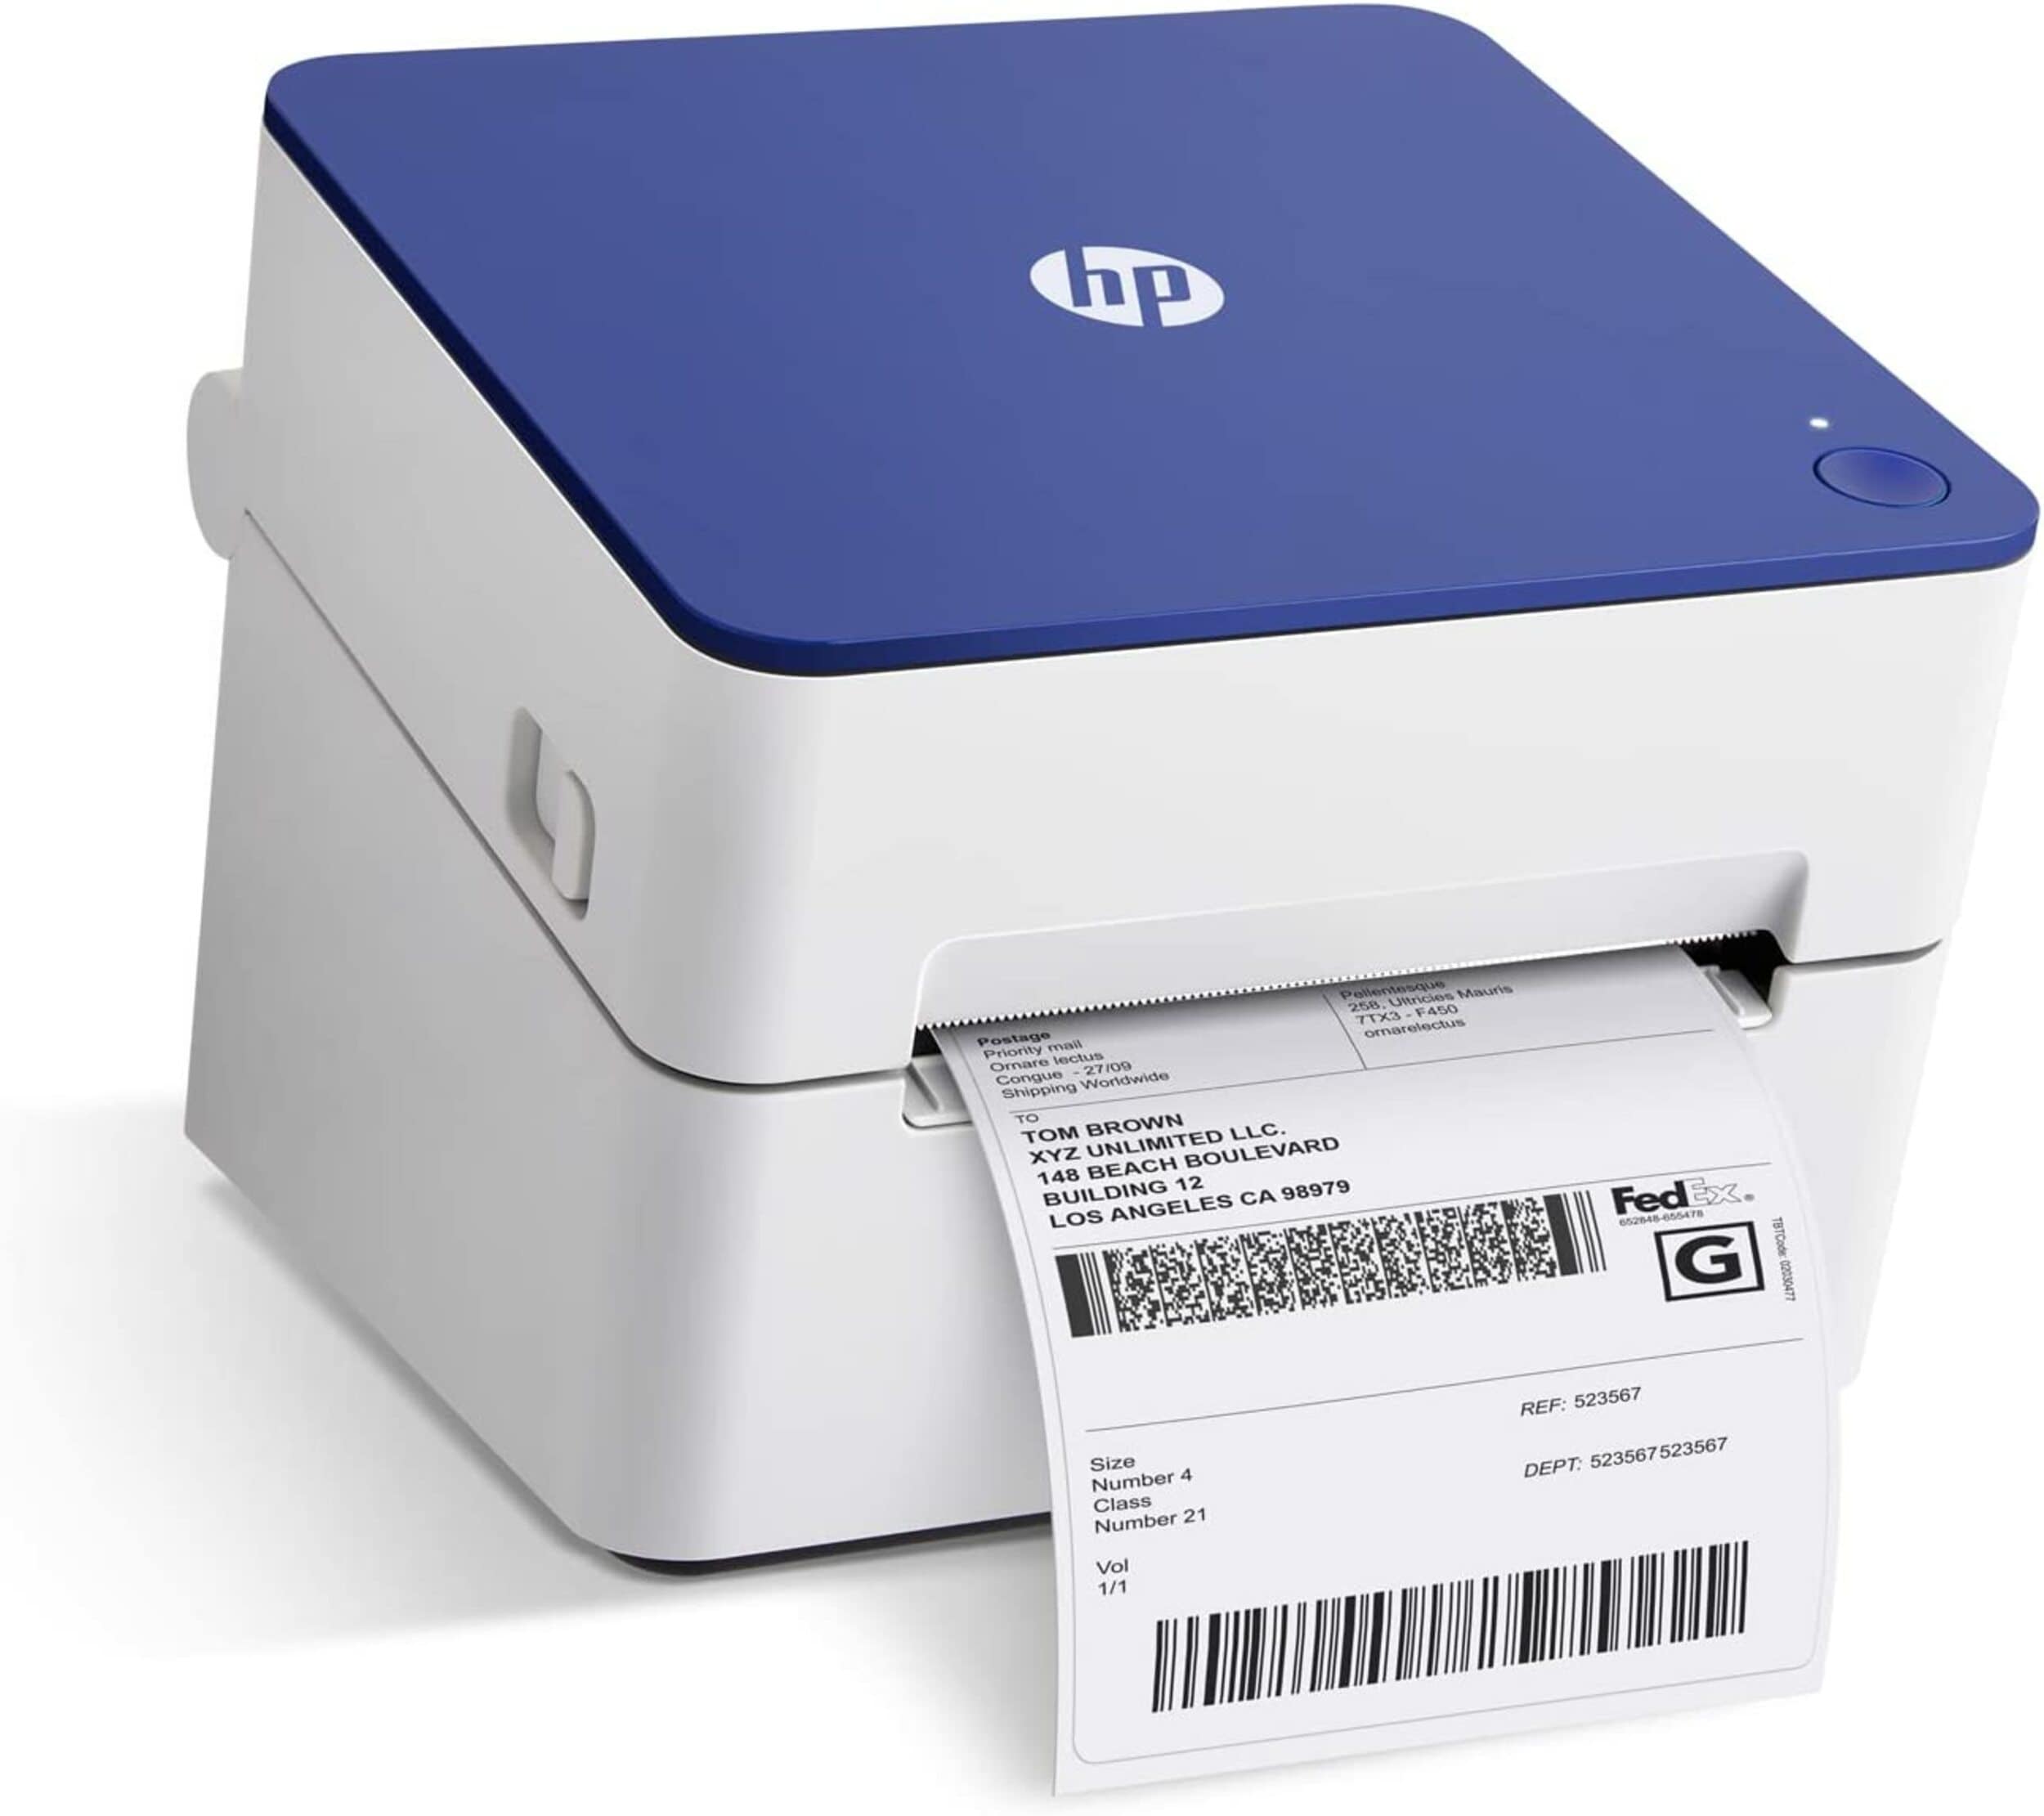 Mini Portable Thermal Printer 300 DPI - Blue 